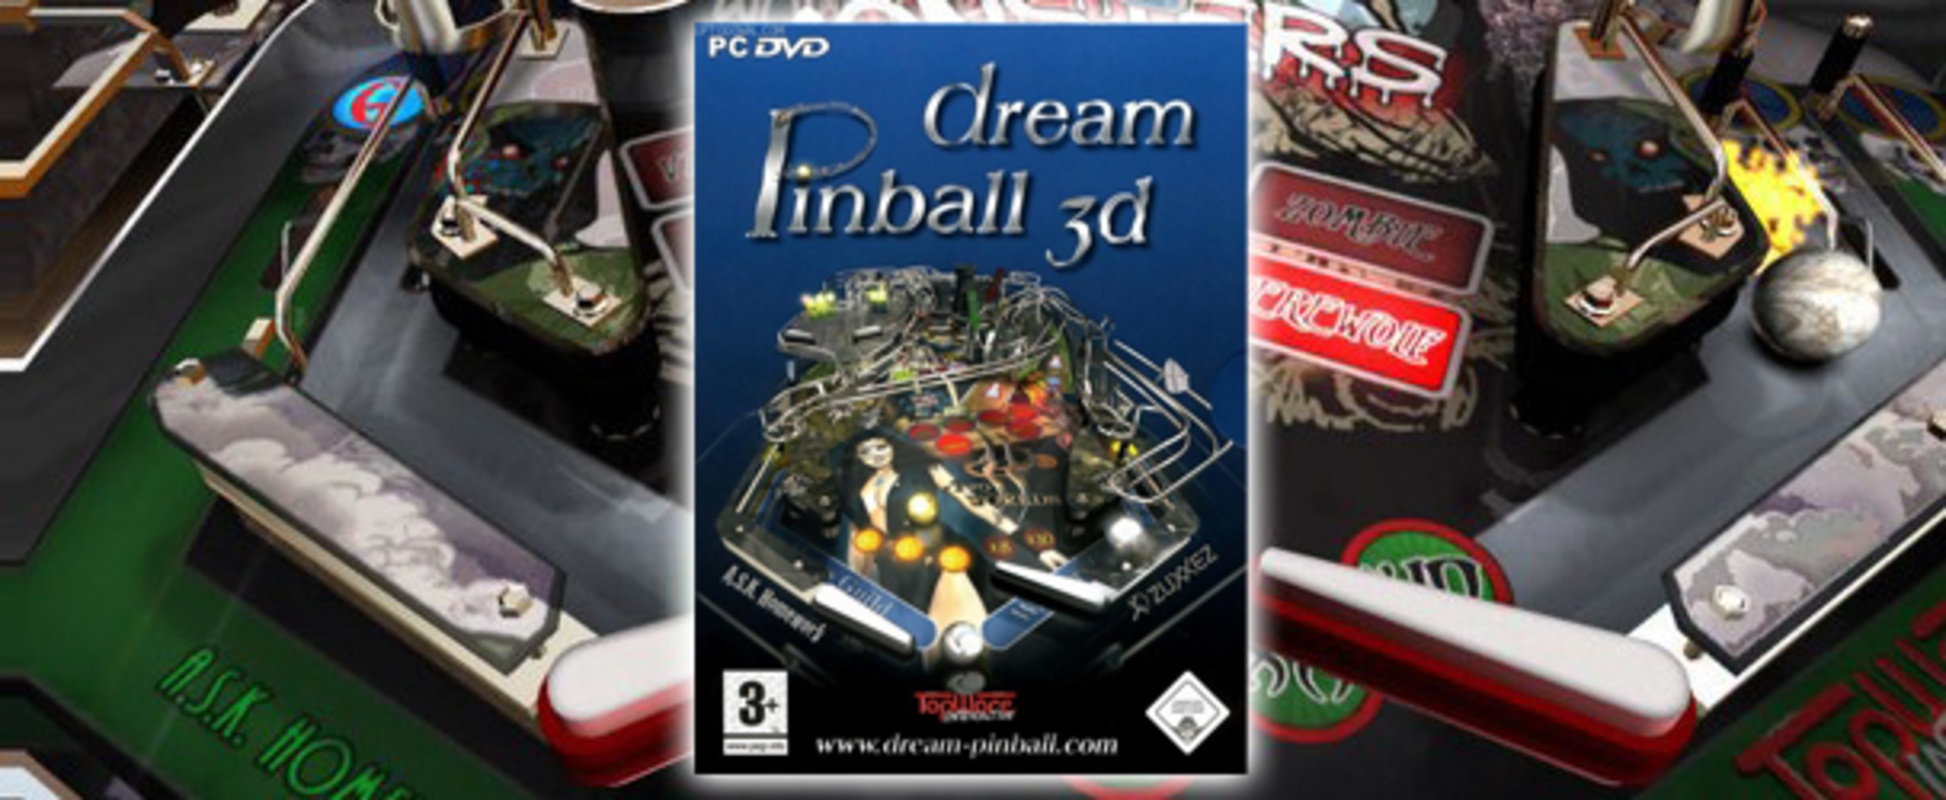 Dream Pinball 3D feature